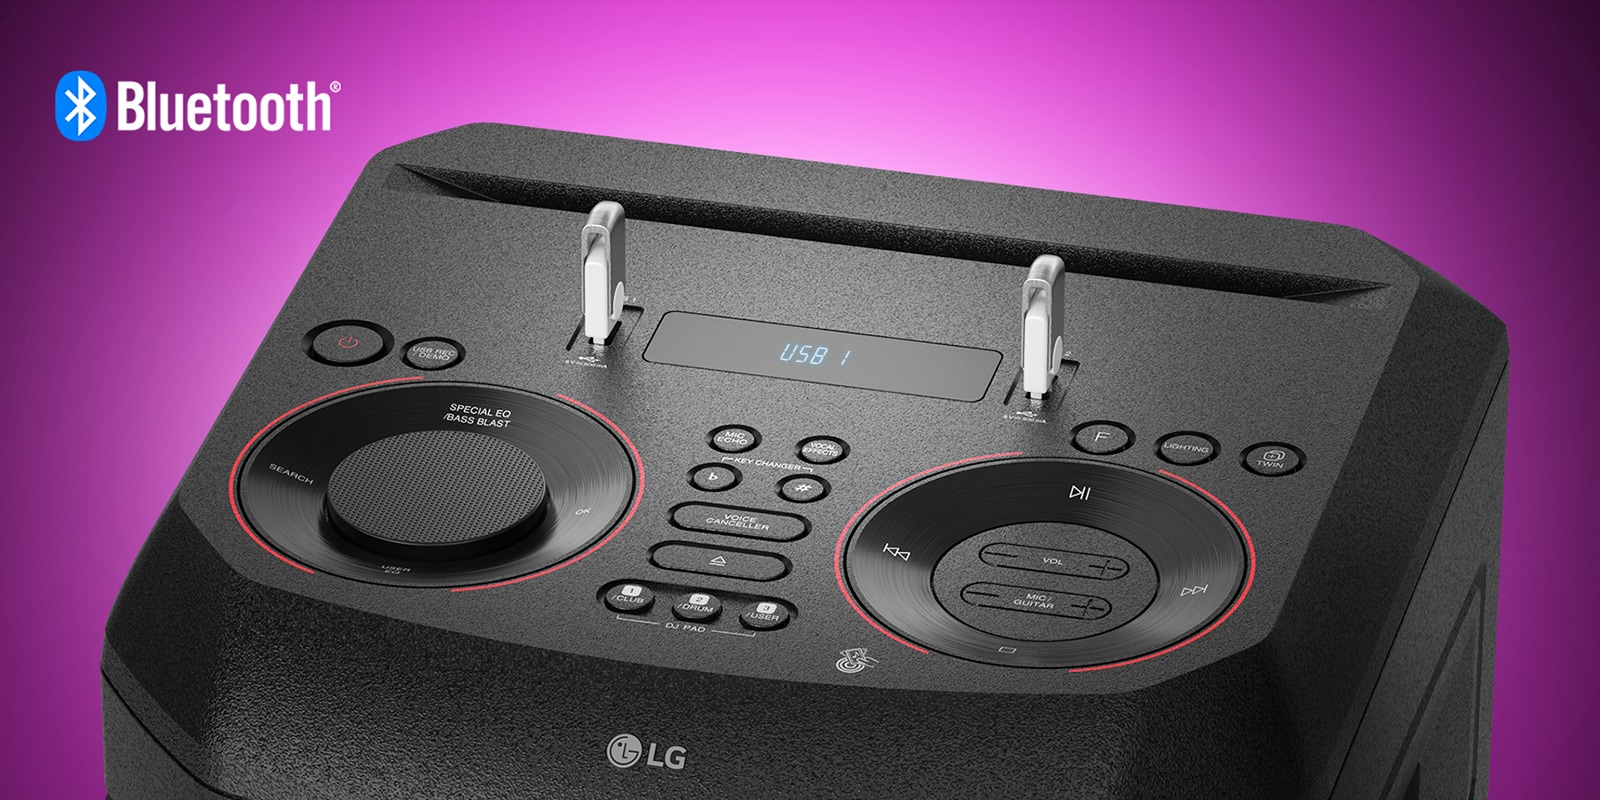 نمای نزدیک از دکمه های کنترل در بالای LG XBOOM با دو USB متصل. لوگوی Bluetooth در گوشه سمت چپ و بالا نشان داده شده است.